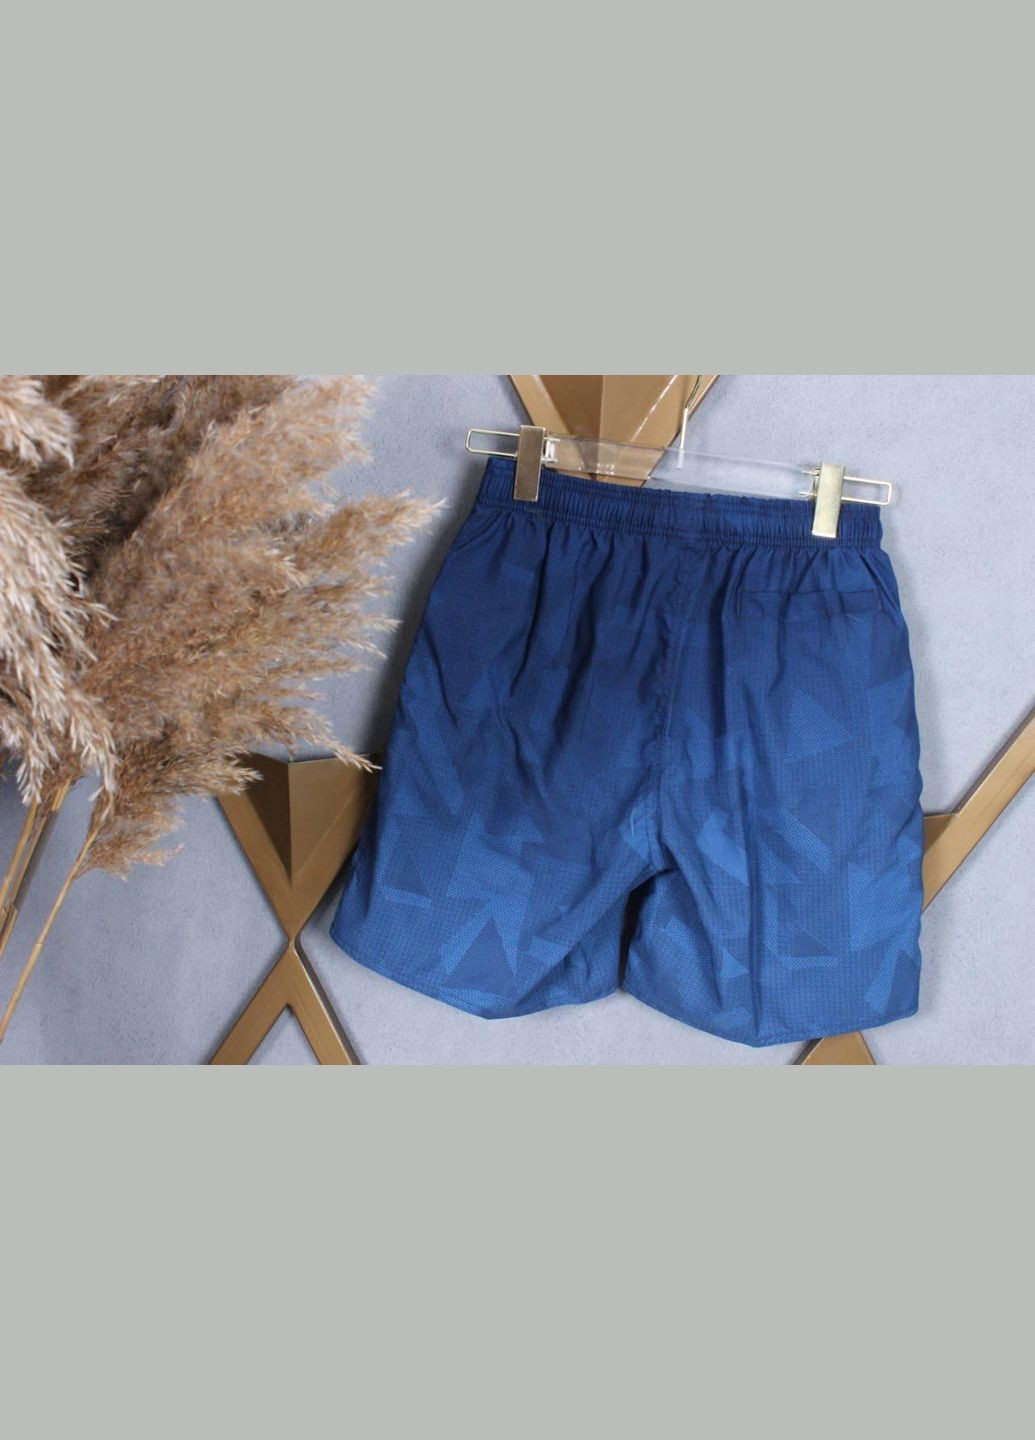 Фабричні шорти для чоловіків нова колекція D-2385 Синій, XL Sofia (268025171)